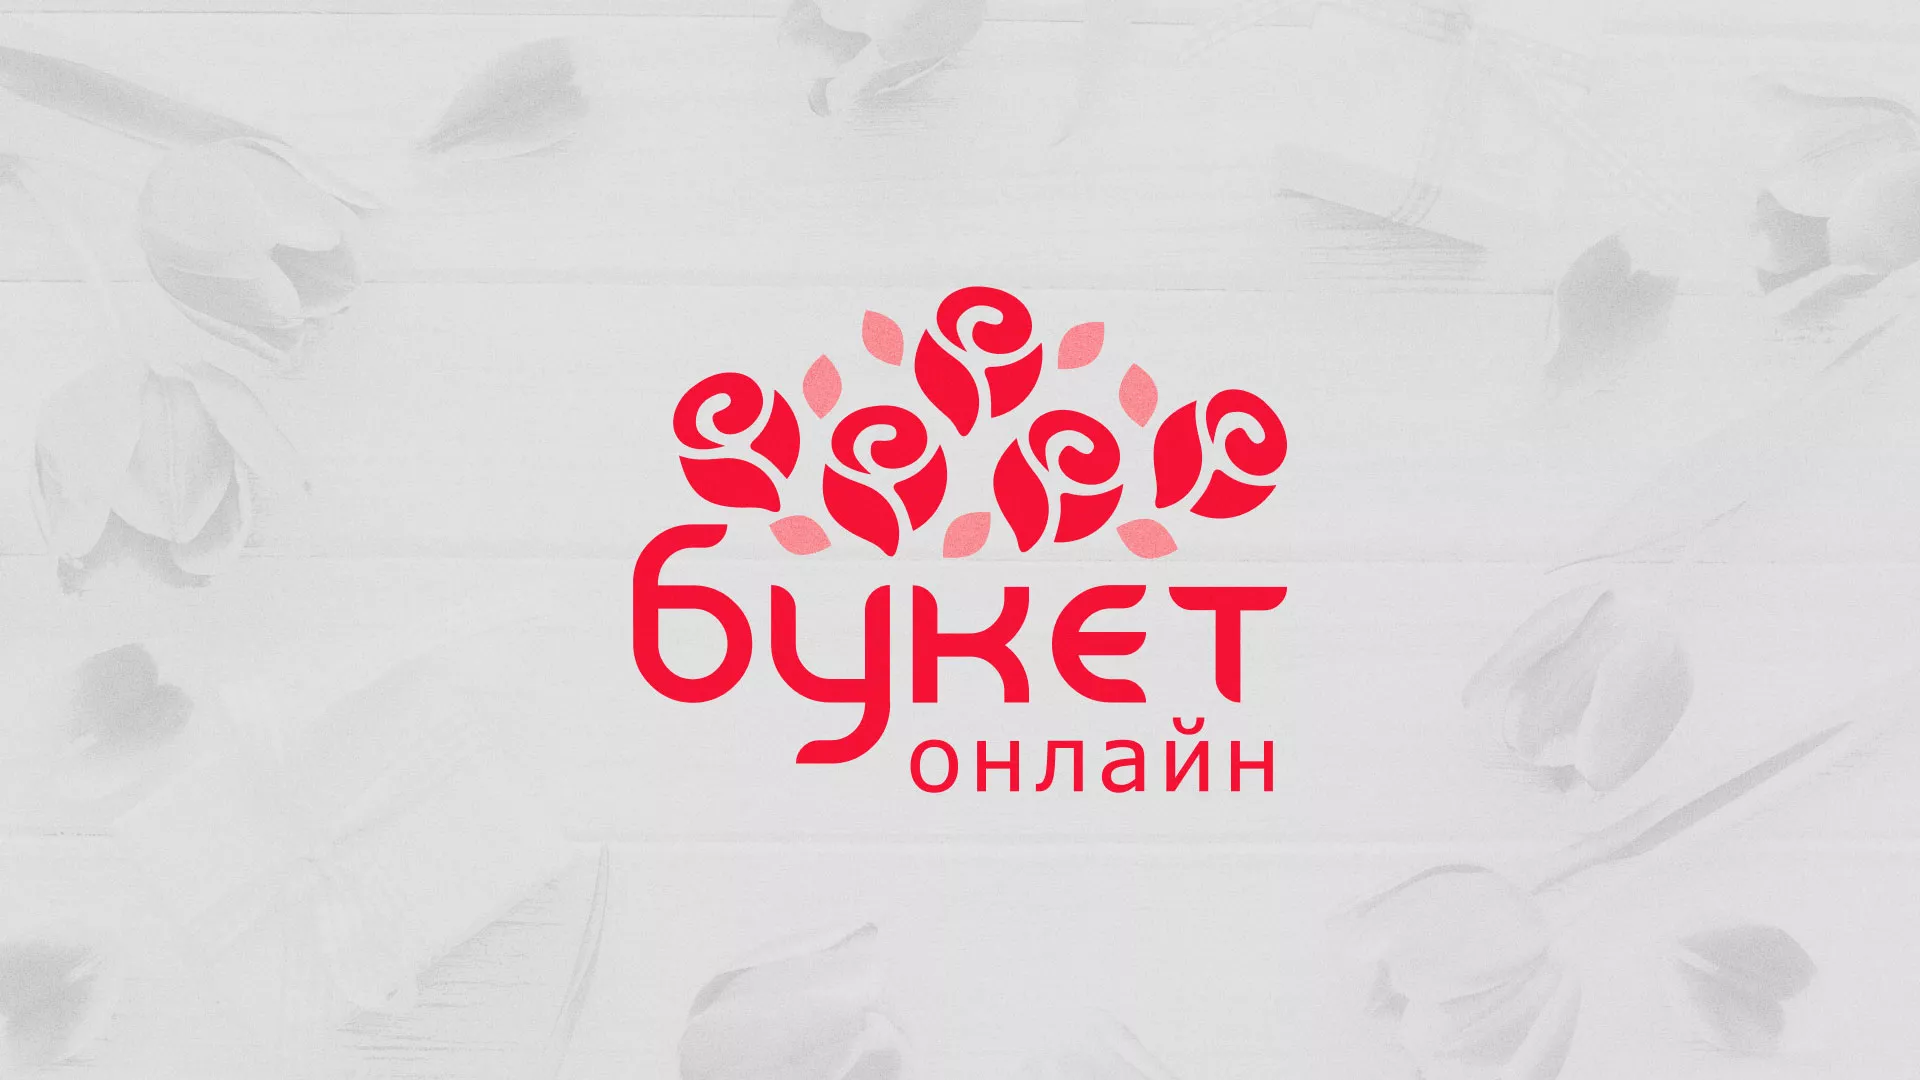 Создание интернет-магазина «Букет-онлайн» по цветам в Белореченске